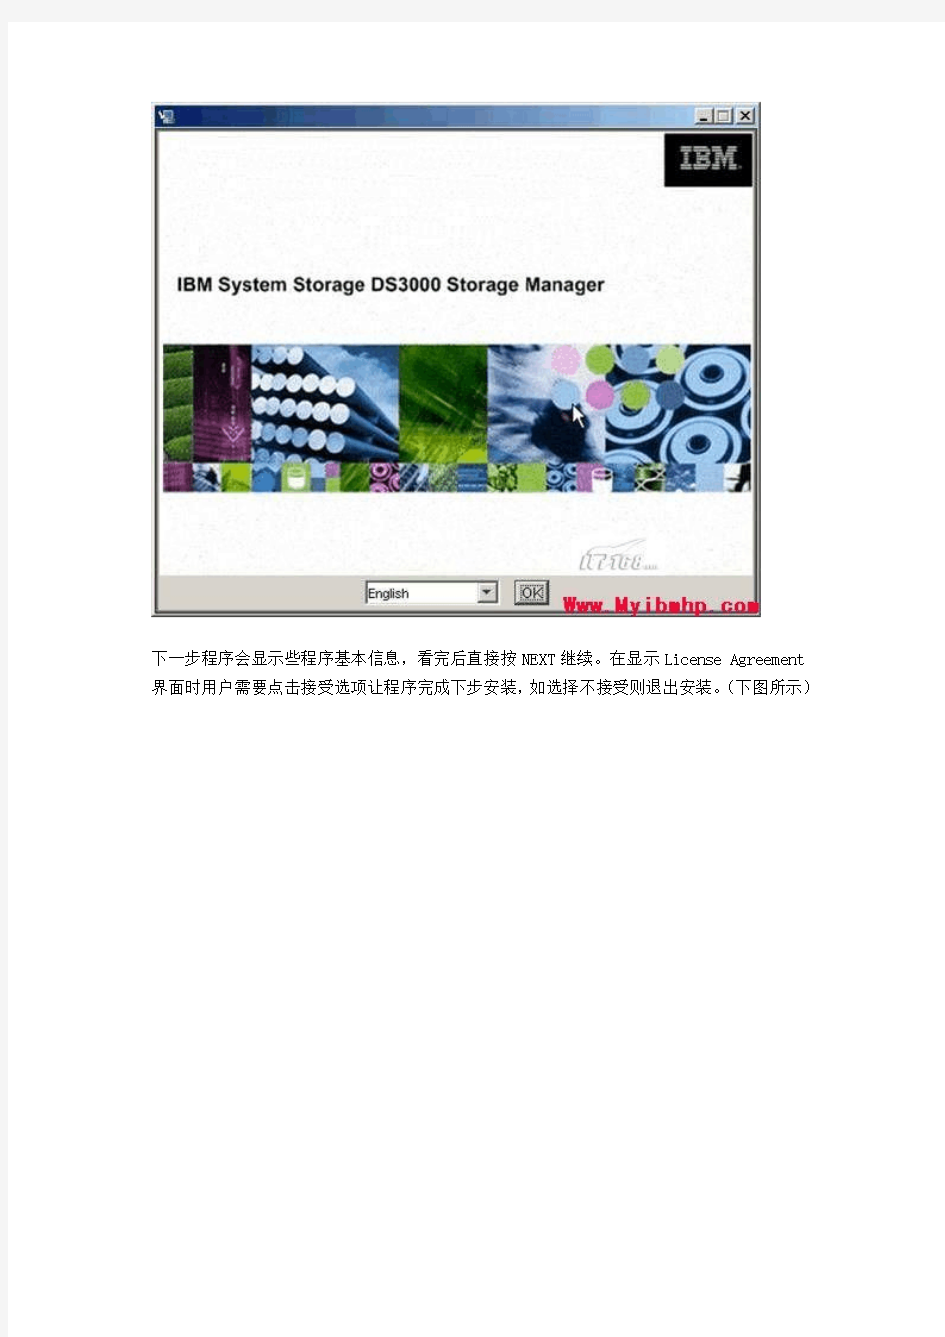 IBM Storage DS3400(DS3200)安装手册指南